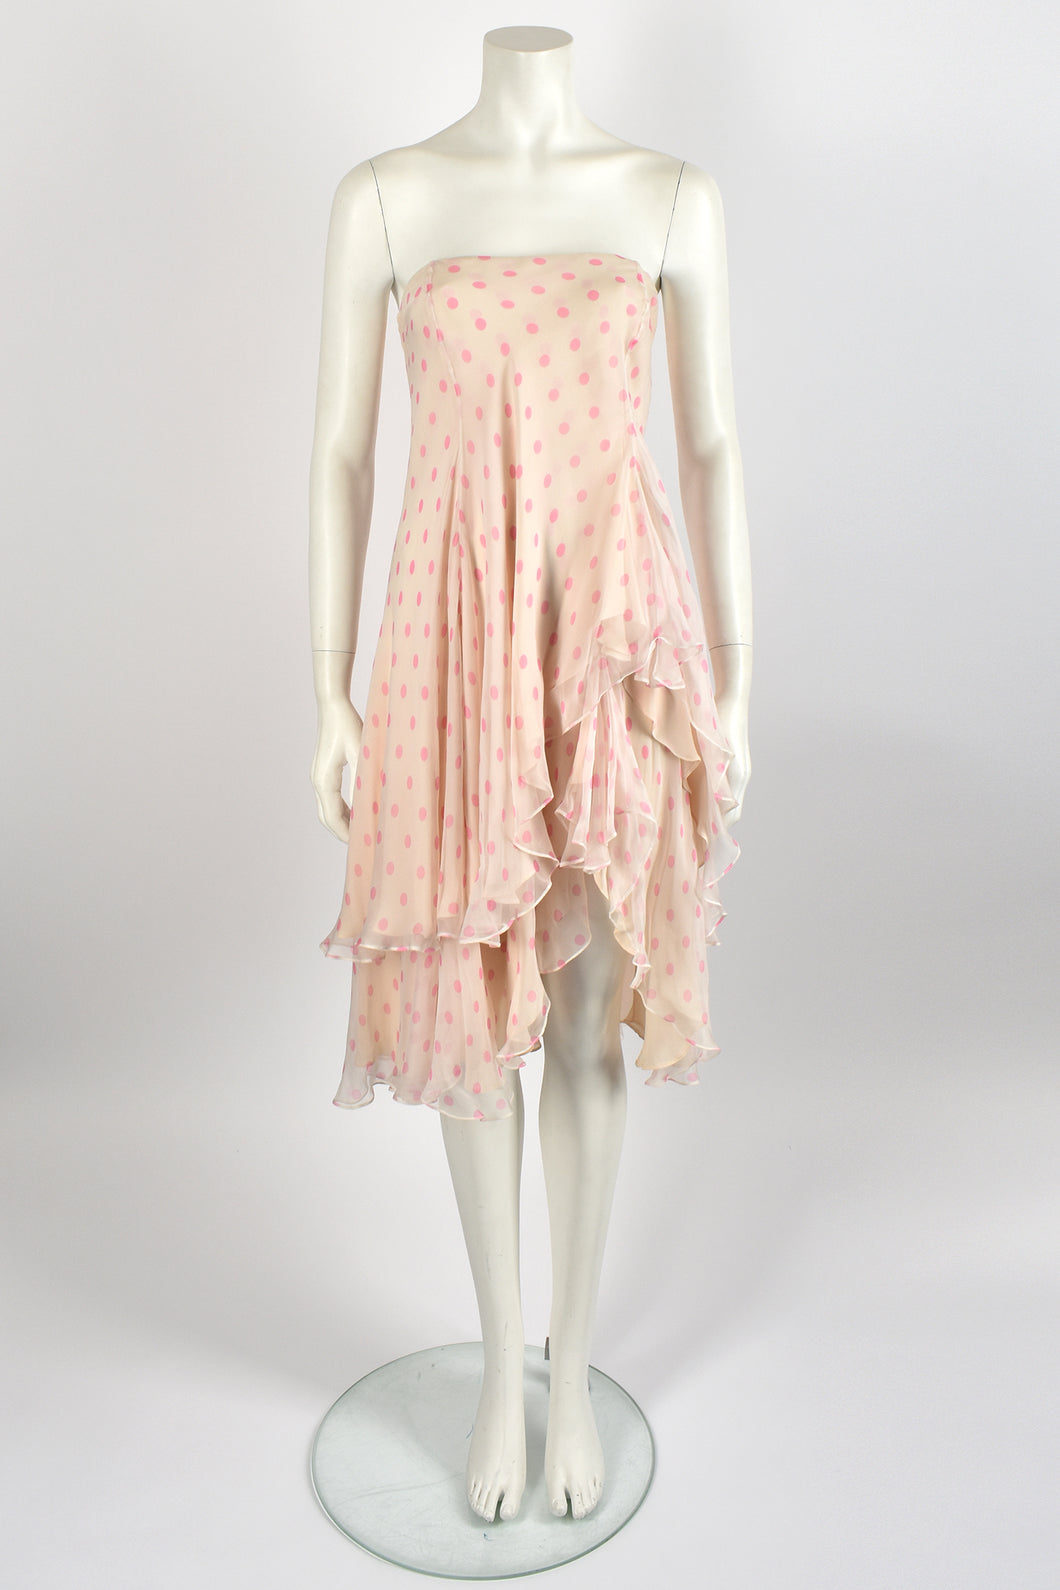 RALPH LAUREN silk chiffon dress / S-M